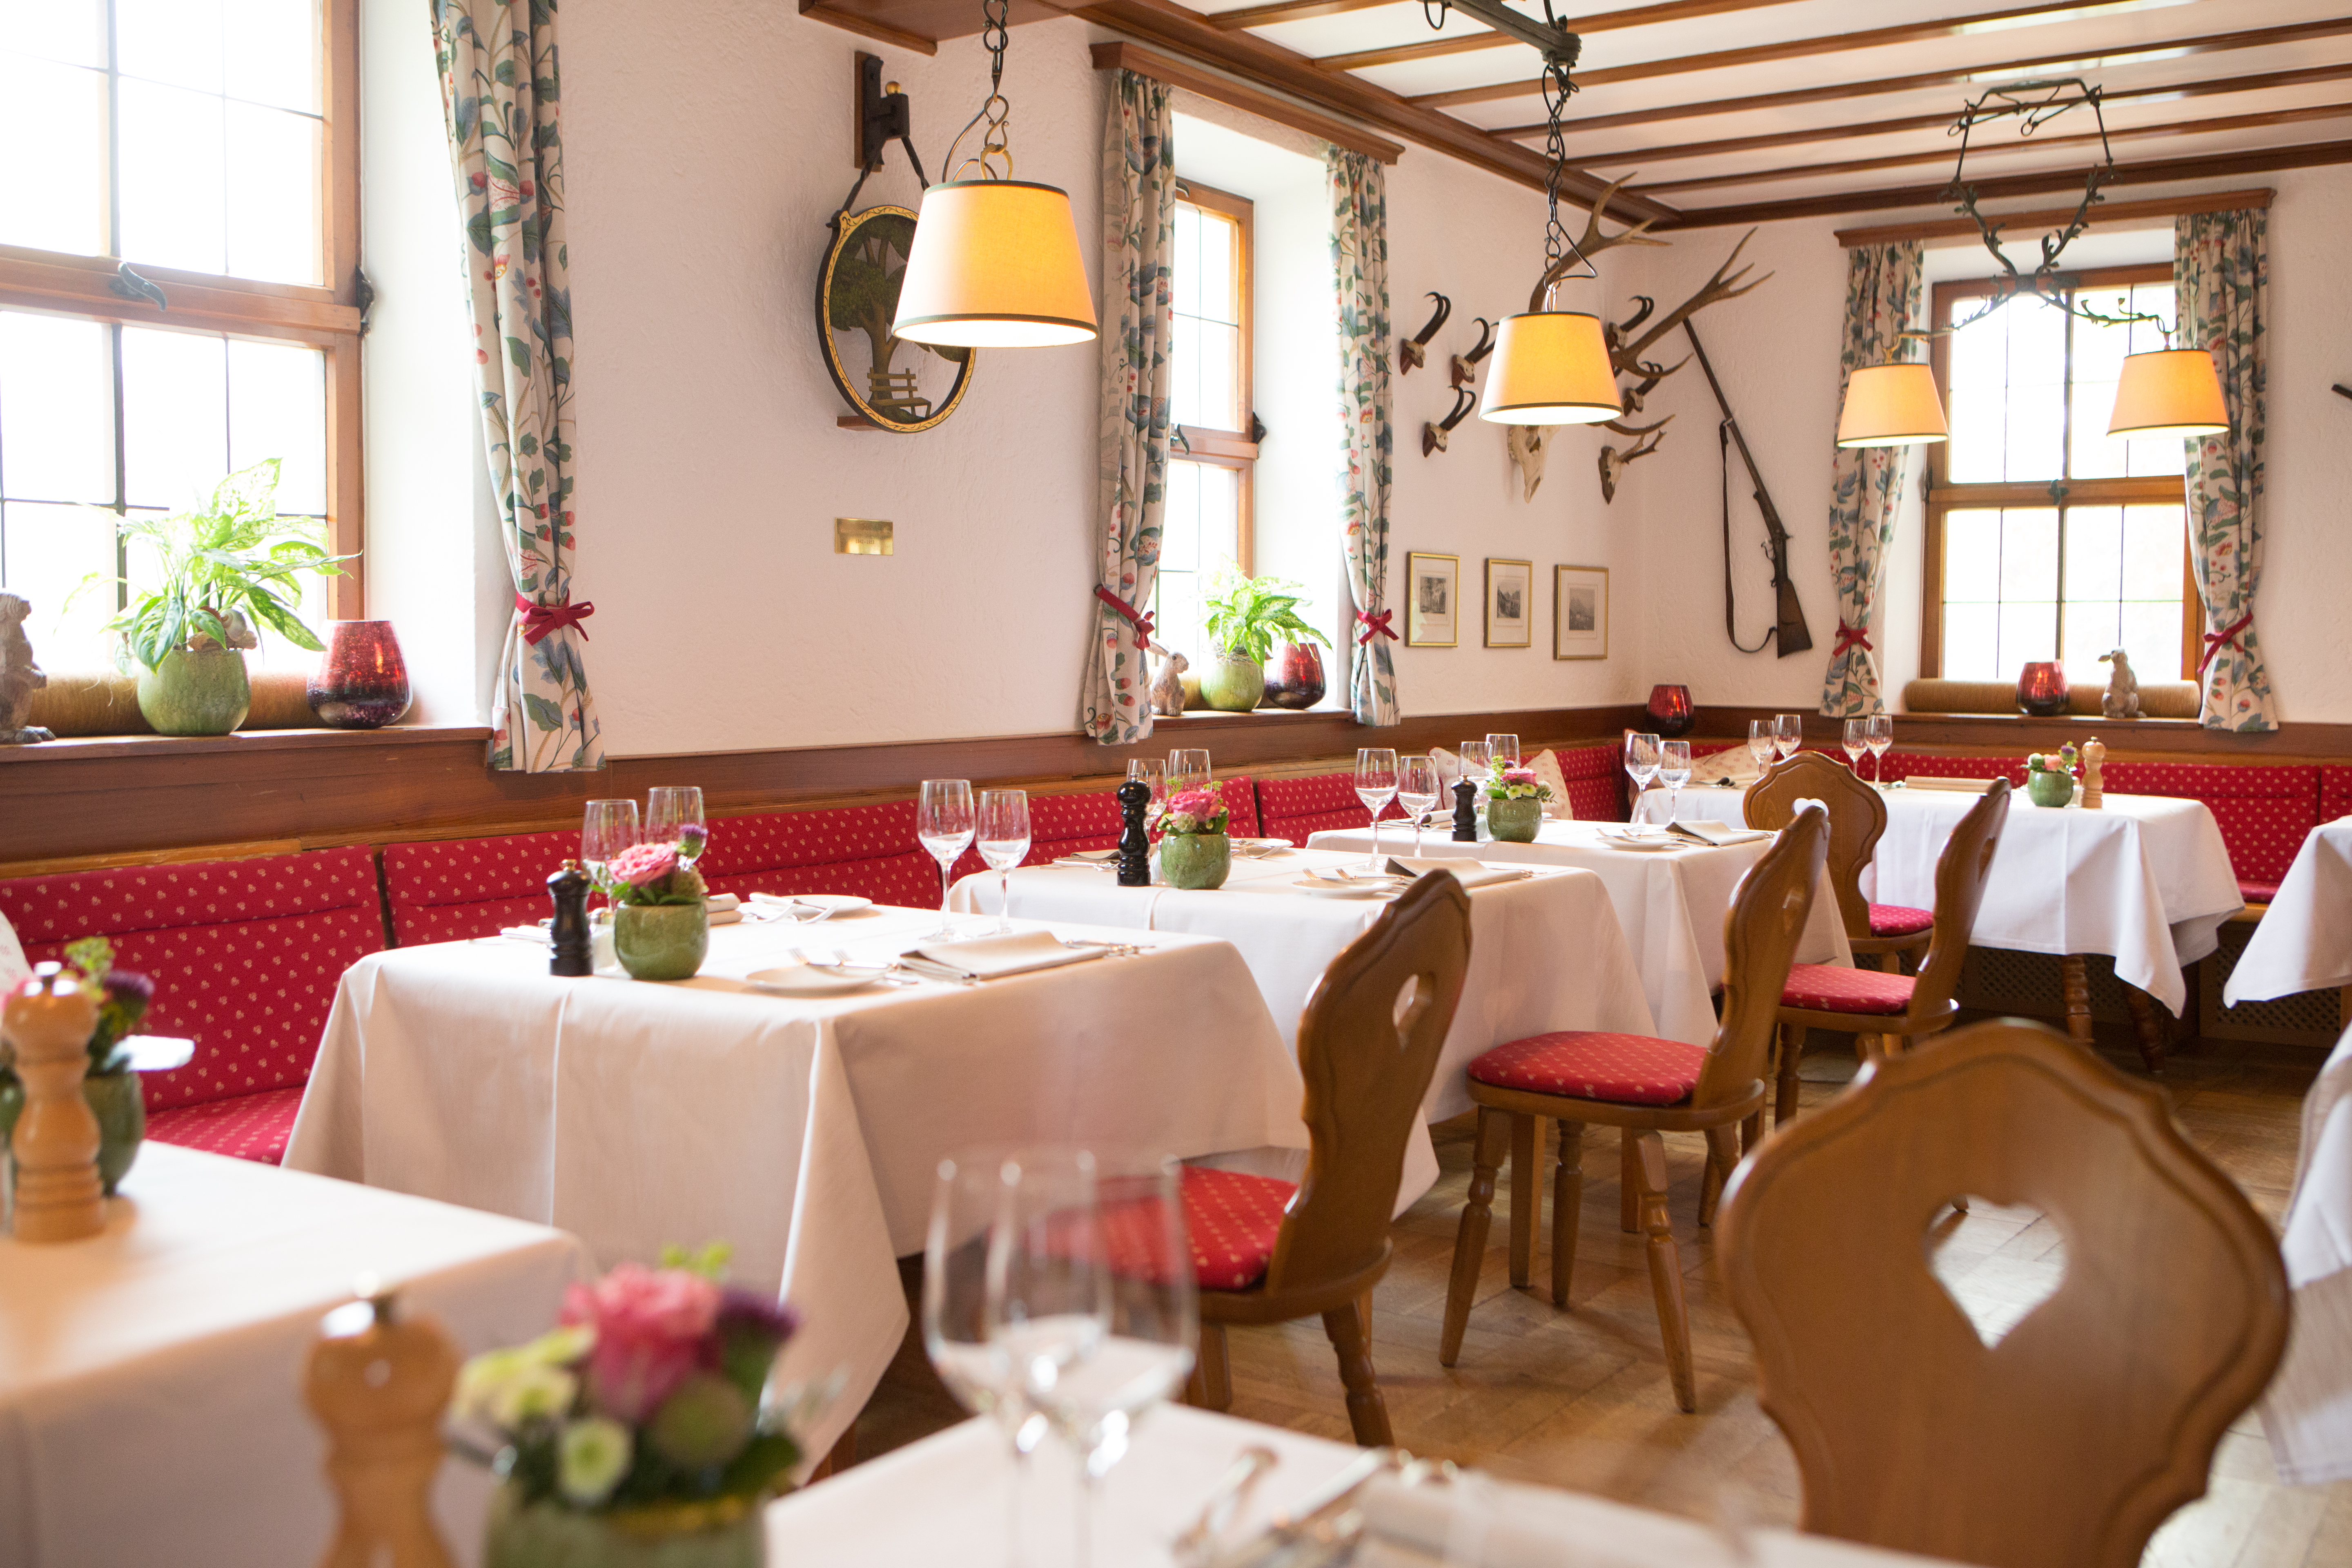 Restaurant Jägerstube im Schlosshotel Friedrichsruhe, Zweiflingen.
